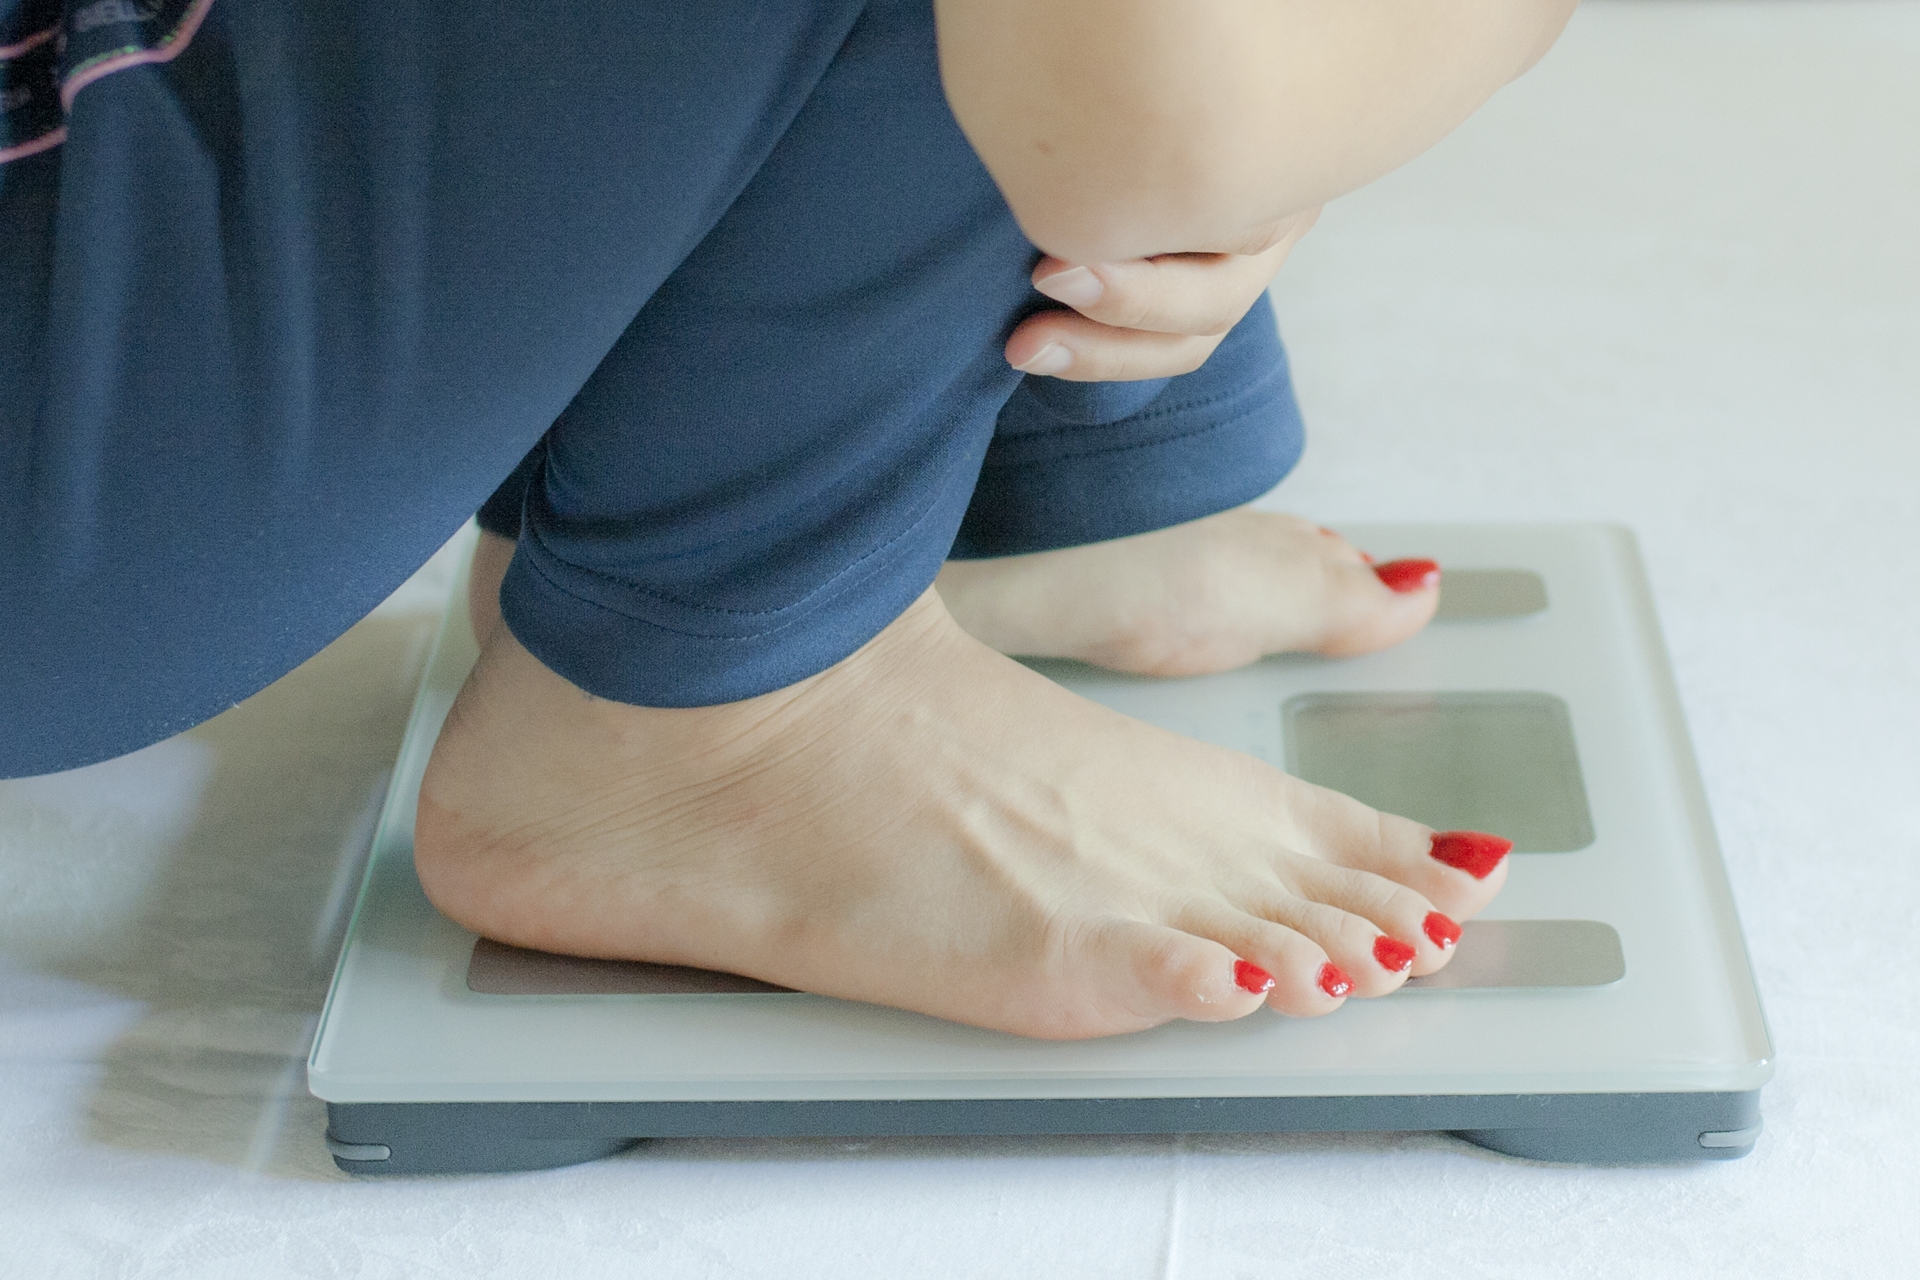 妊娠中の体重管理 筆者のリアルな体重増加グラフ公開 と実践している4つのこと Ayakablog フリーランスデザイナー ワーママブログ